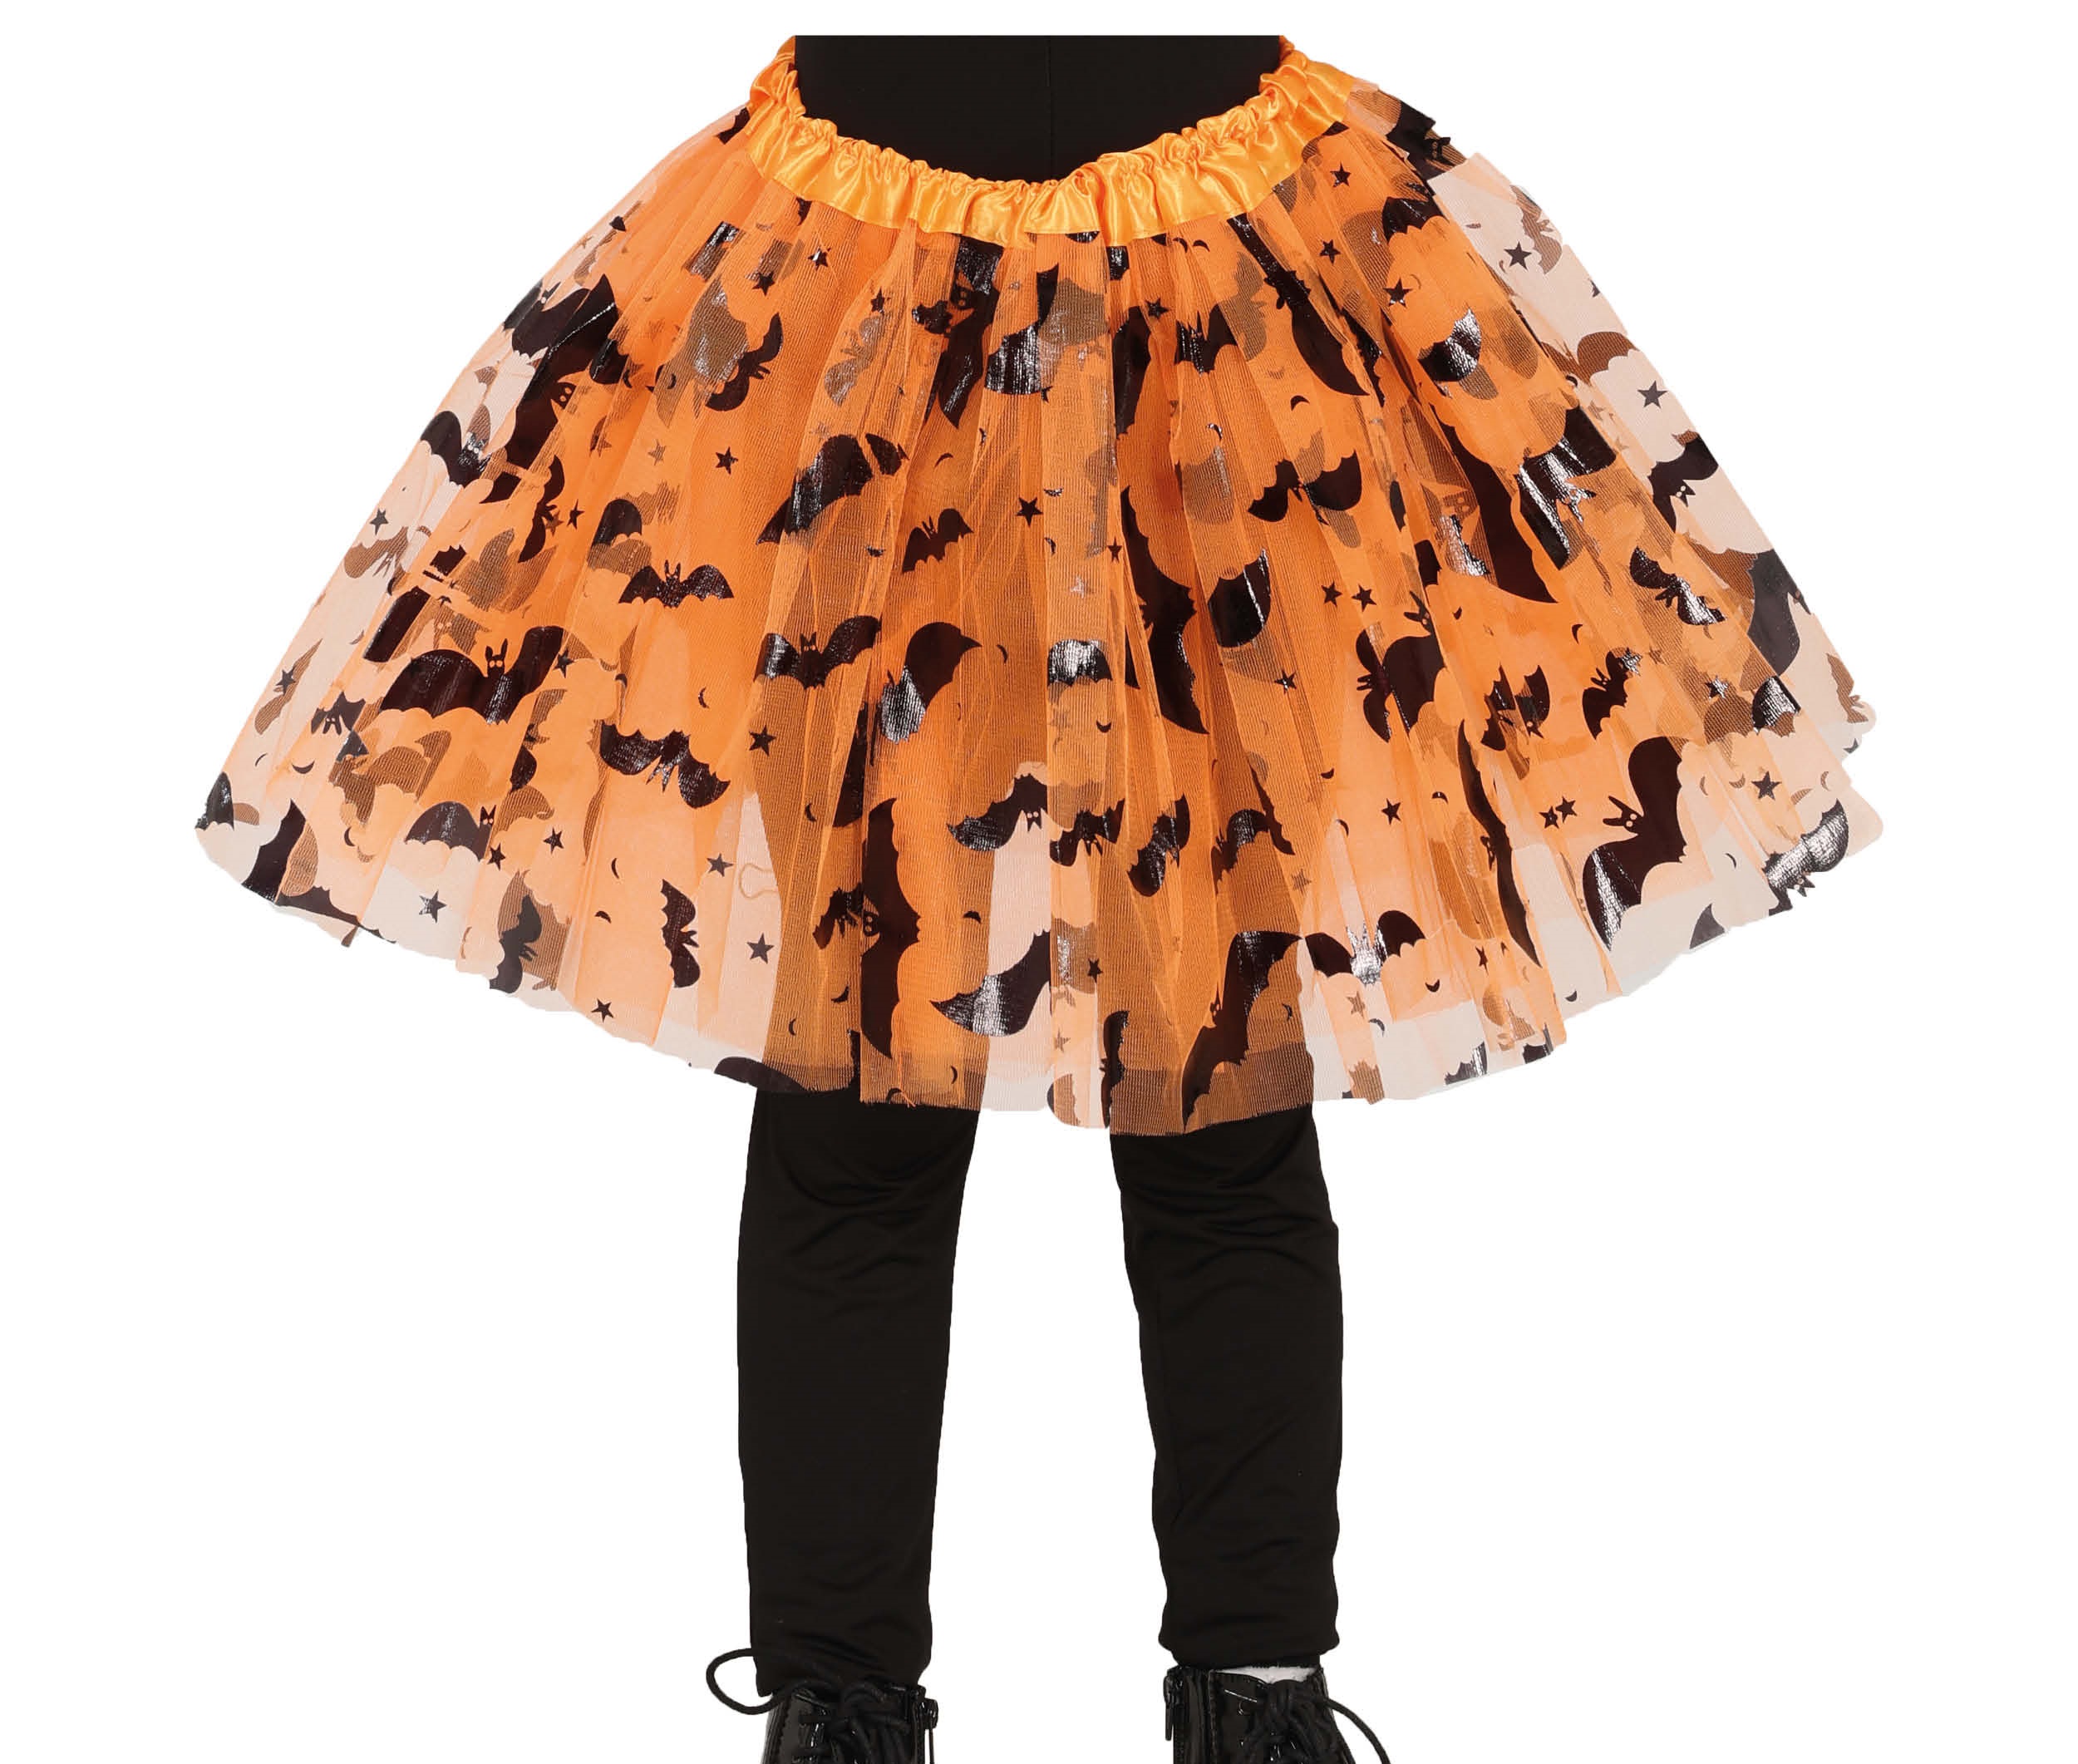 Guirca Detská TUTU sukňa - oranžová s netopiermi